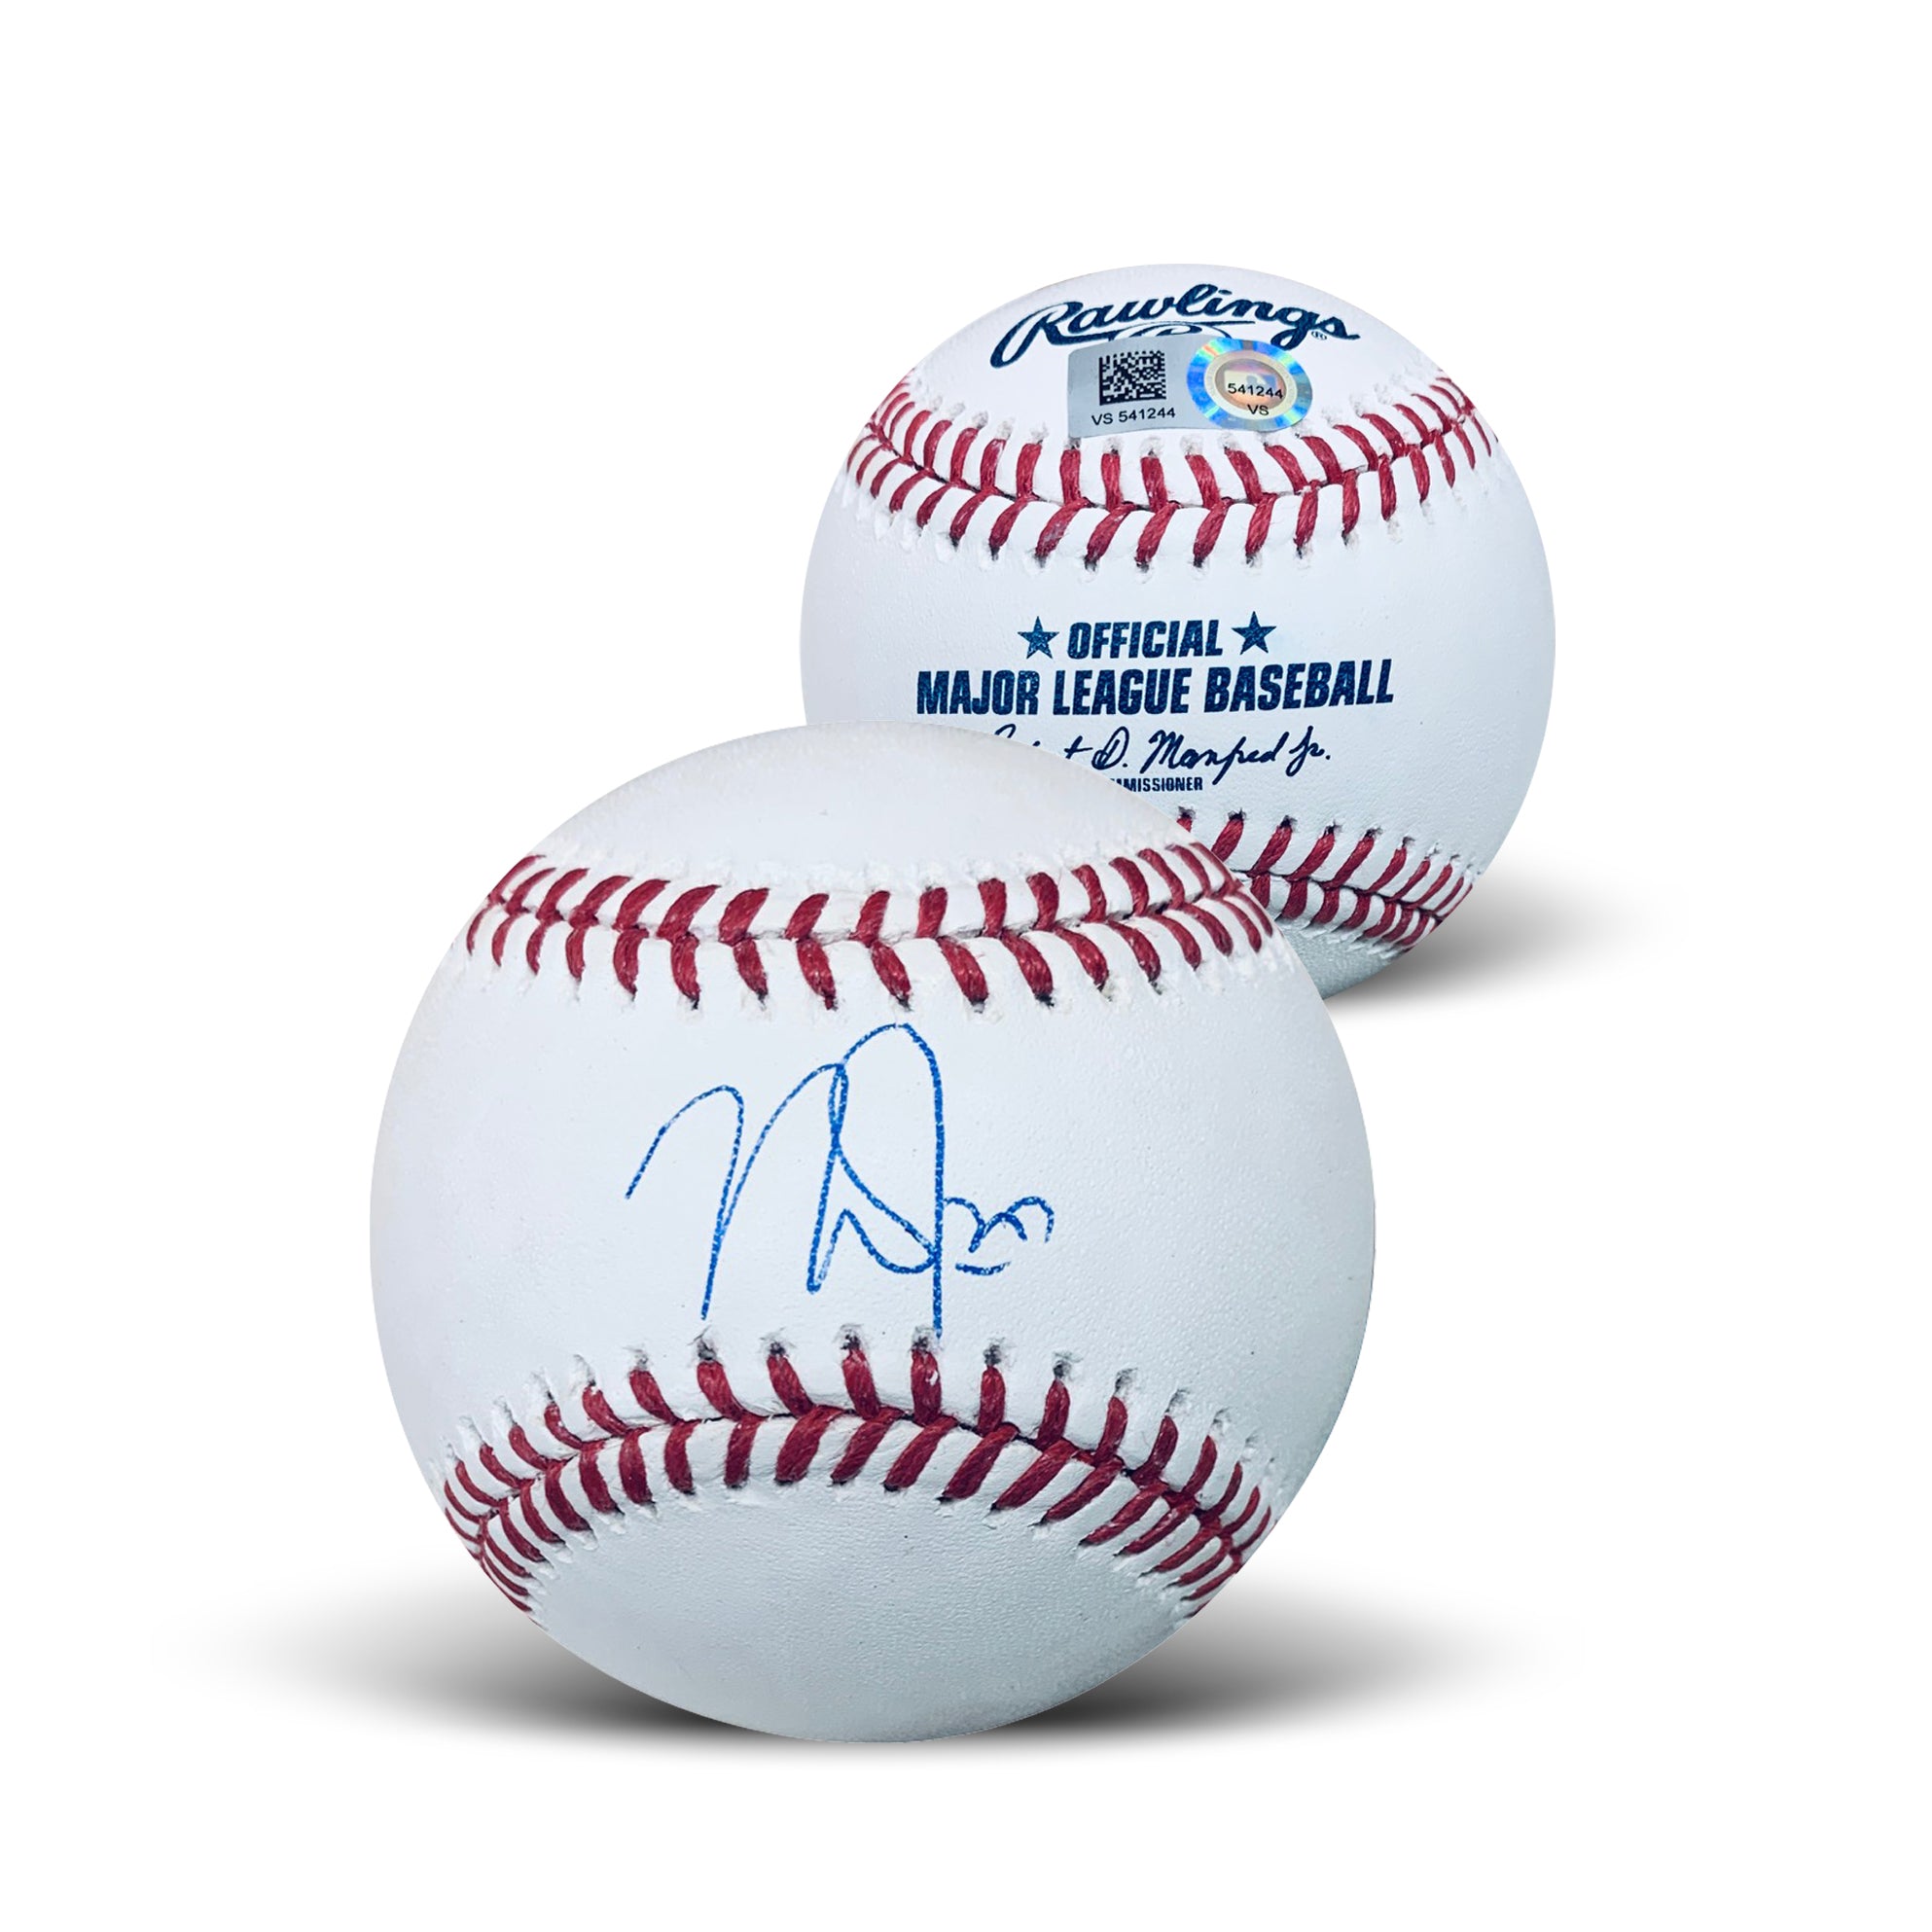 Jeremy Pena Autographed White Pro Style Jersey- MLB Hologram